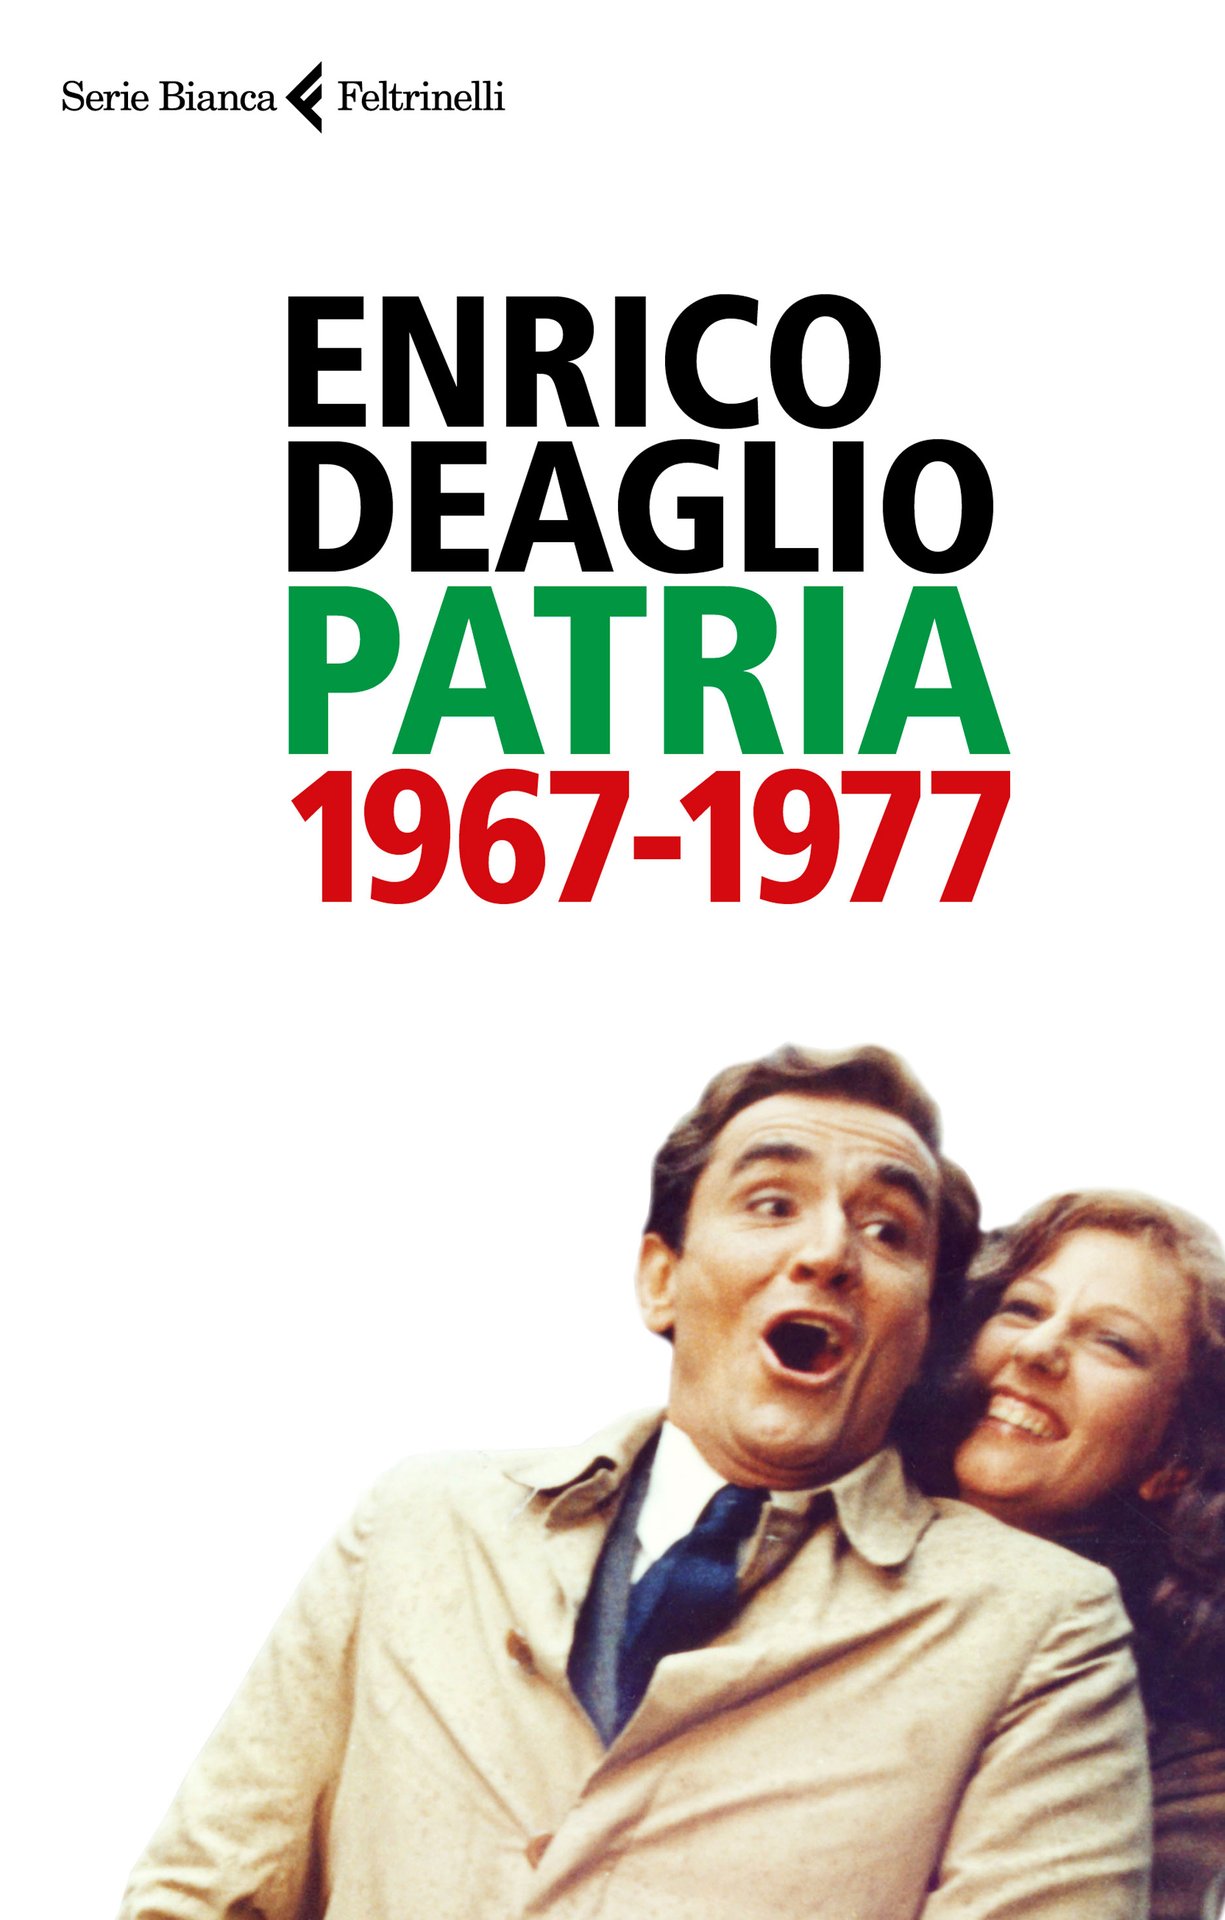 E' online il blog Patria 1967-1977 di Enrico Deaglio